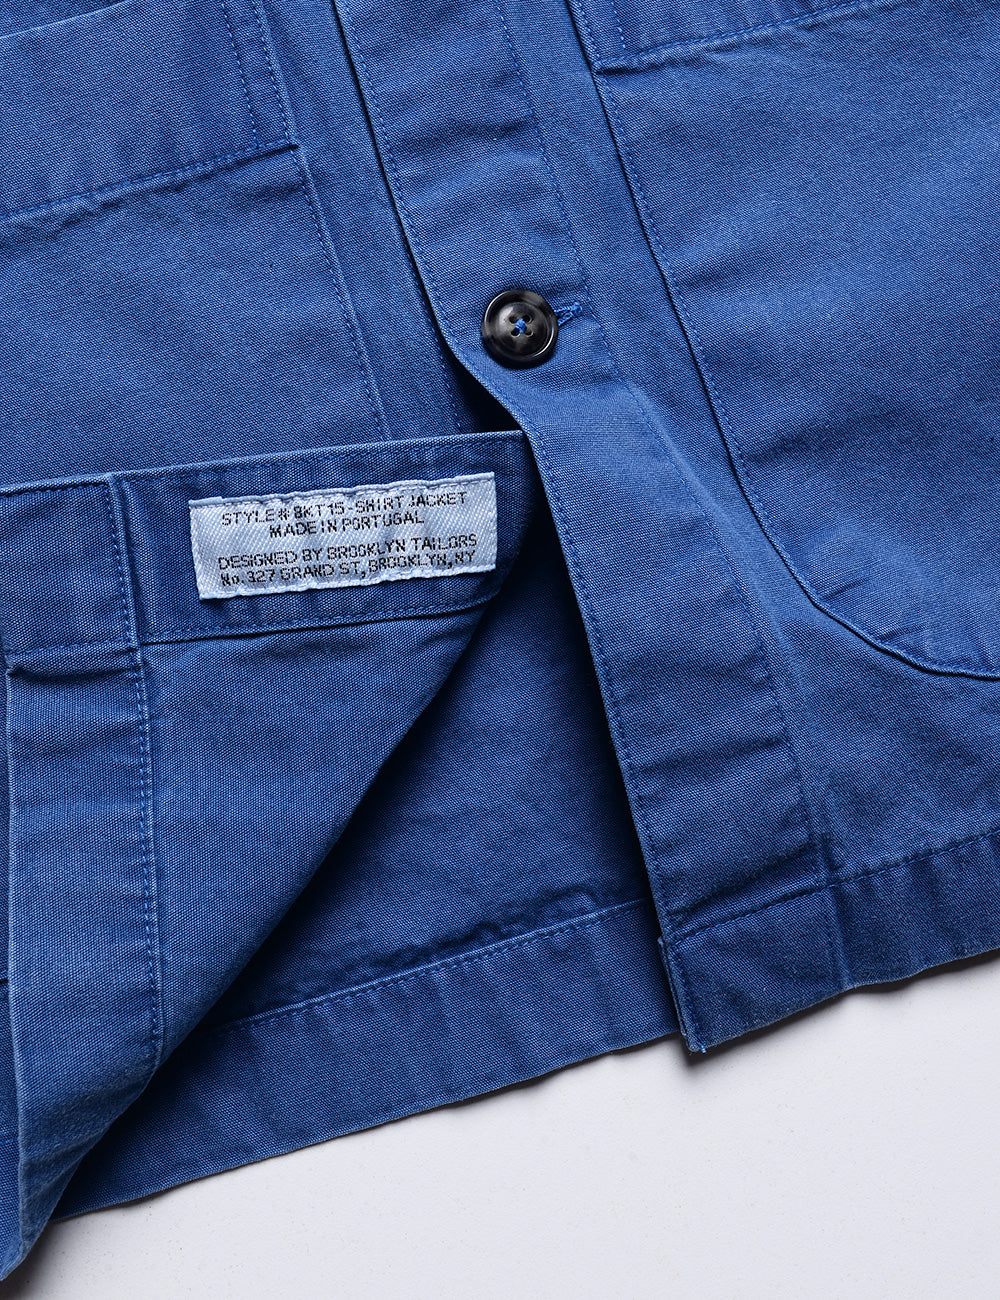 BKT15 Shirt Jacket in Crisp Cotton - Washed Cobalt